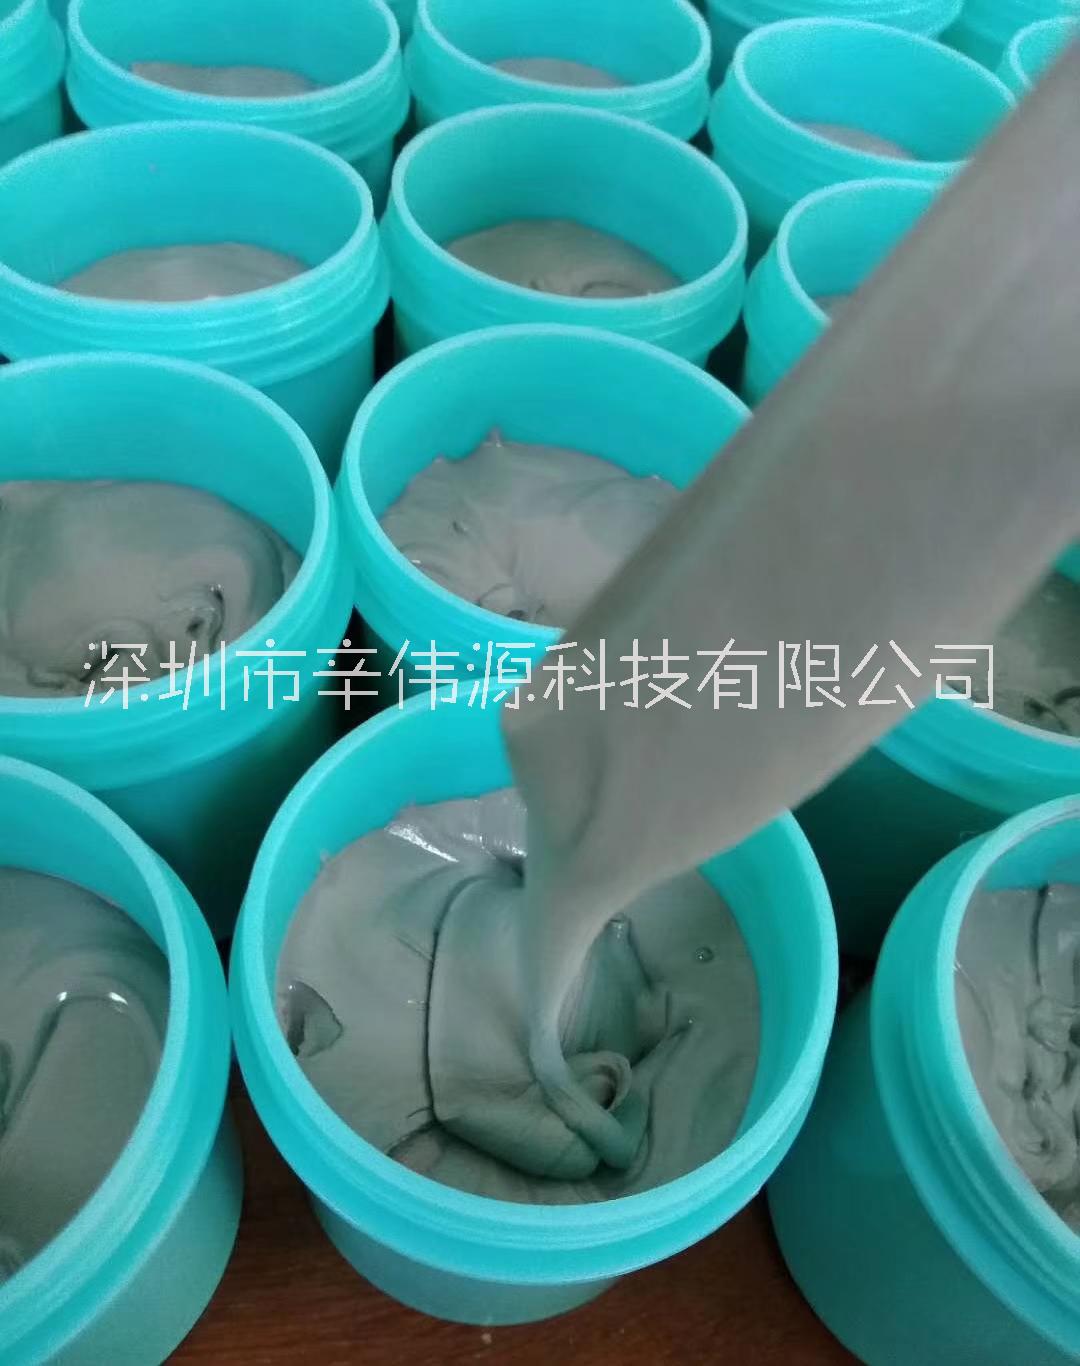 锡铋银无铅环保锡膏,SMT贴片锡膏生产